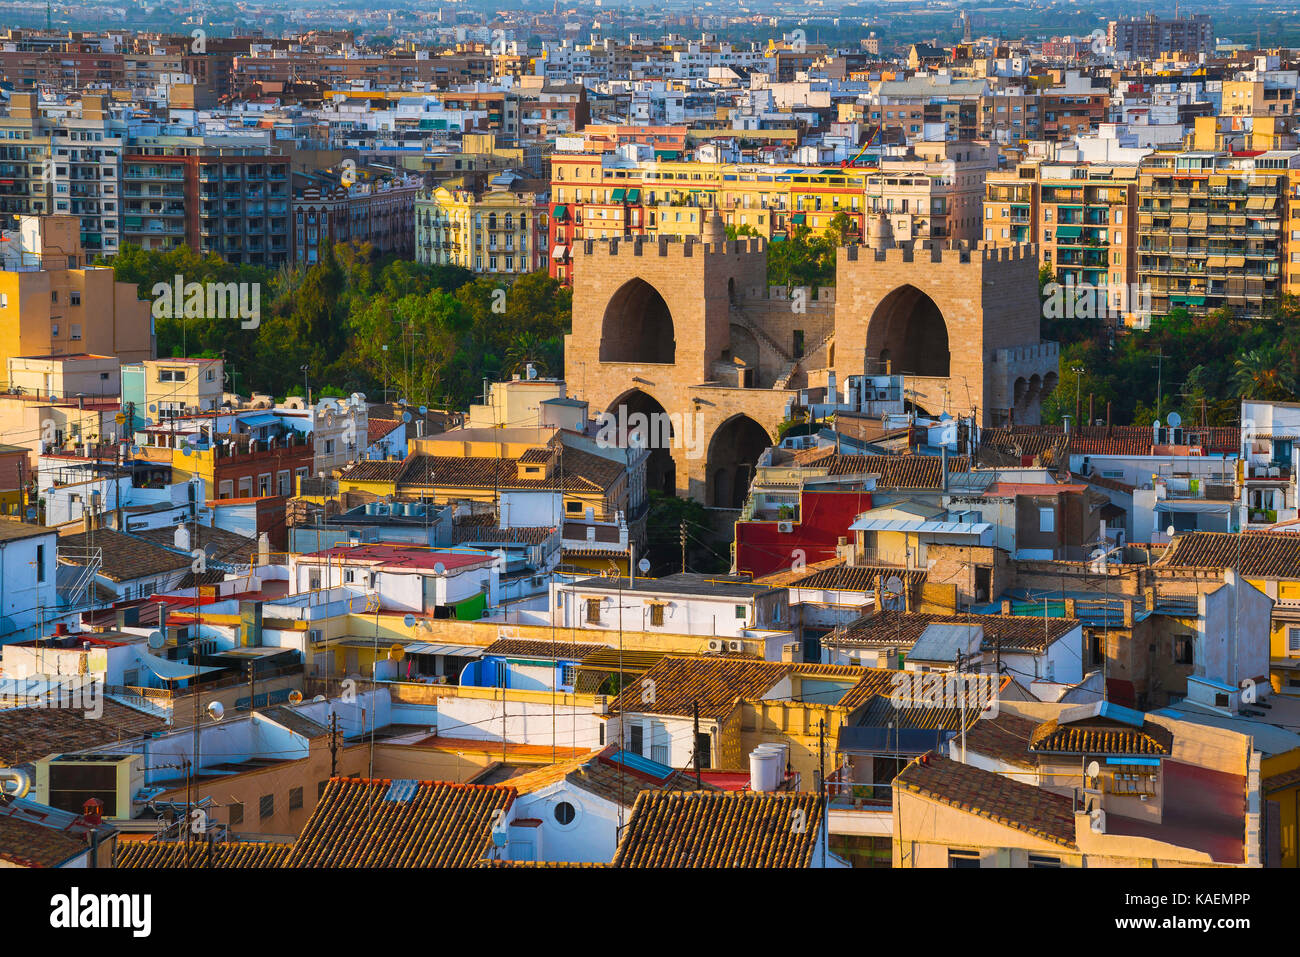 Stadt Valencia, Luftaufnahme von Valencia zeigt die Dächer der Barrio del Carmen Altstadt und der mittelalterlichen Torres Serranos City Gate. Stockfoto